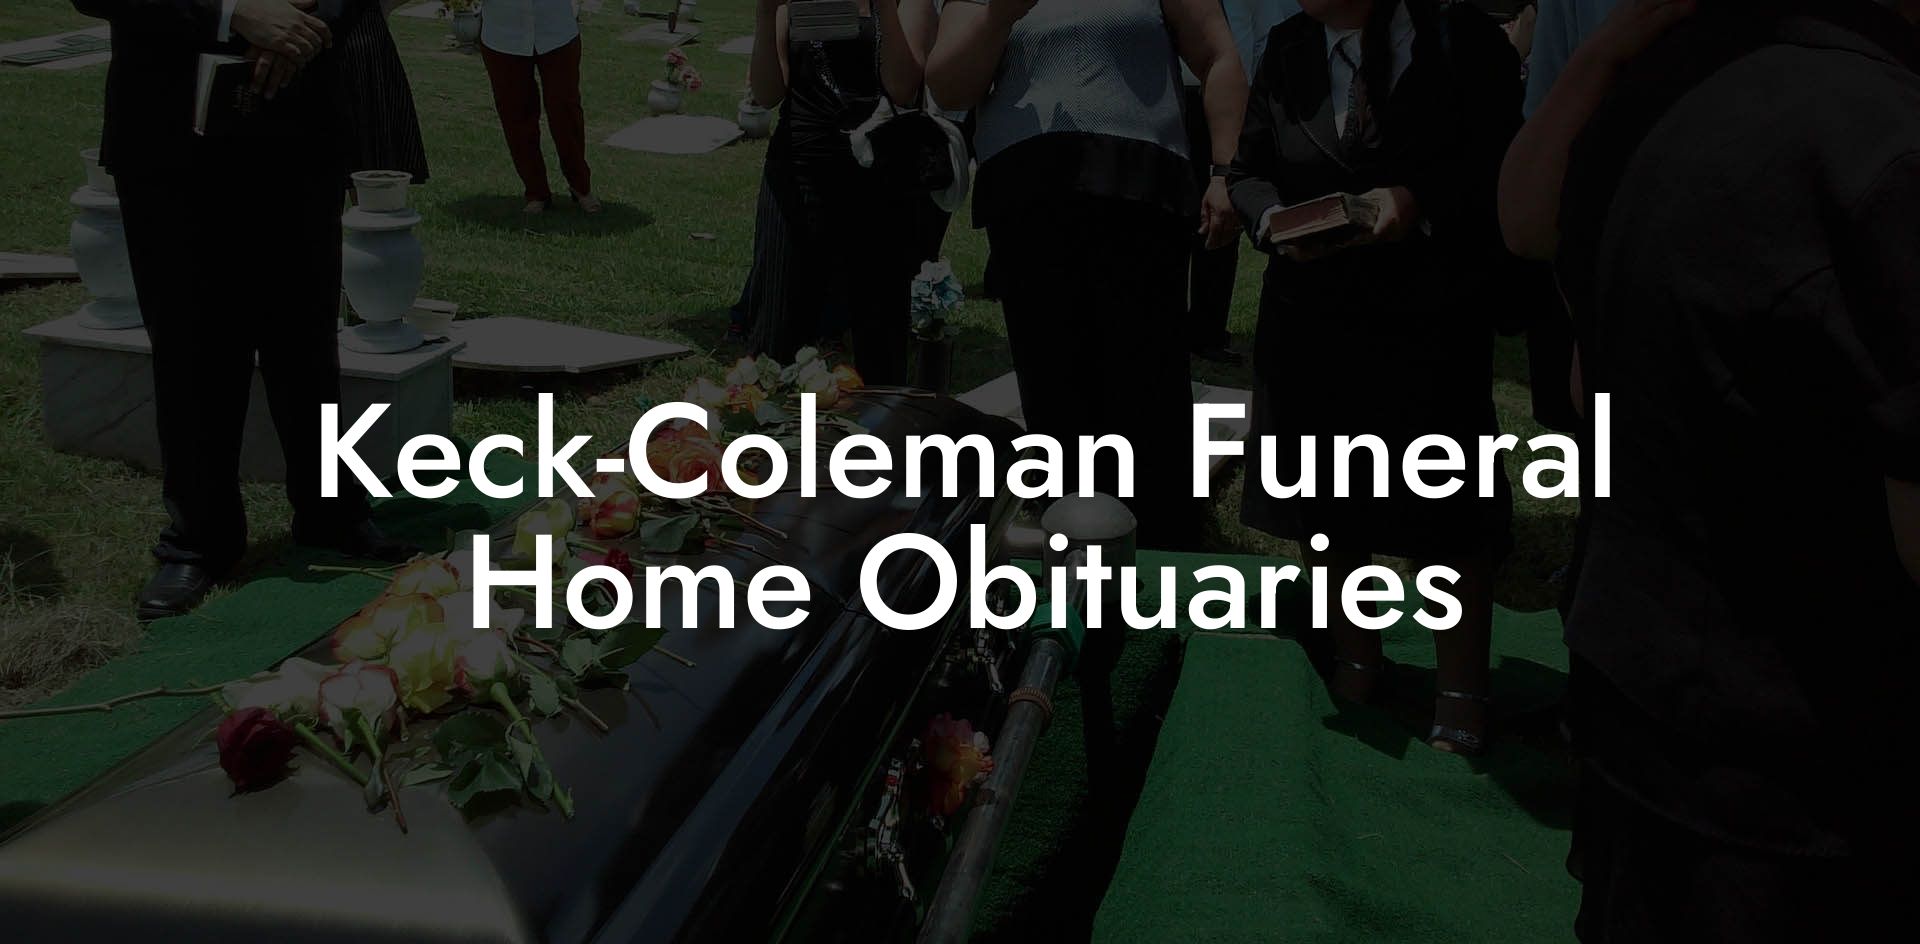 Keck-Coleman Funeral Home Obituaries